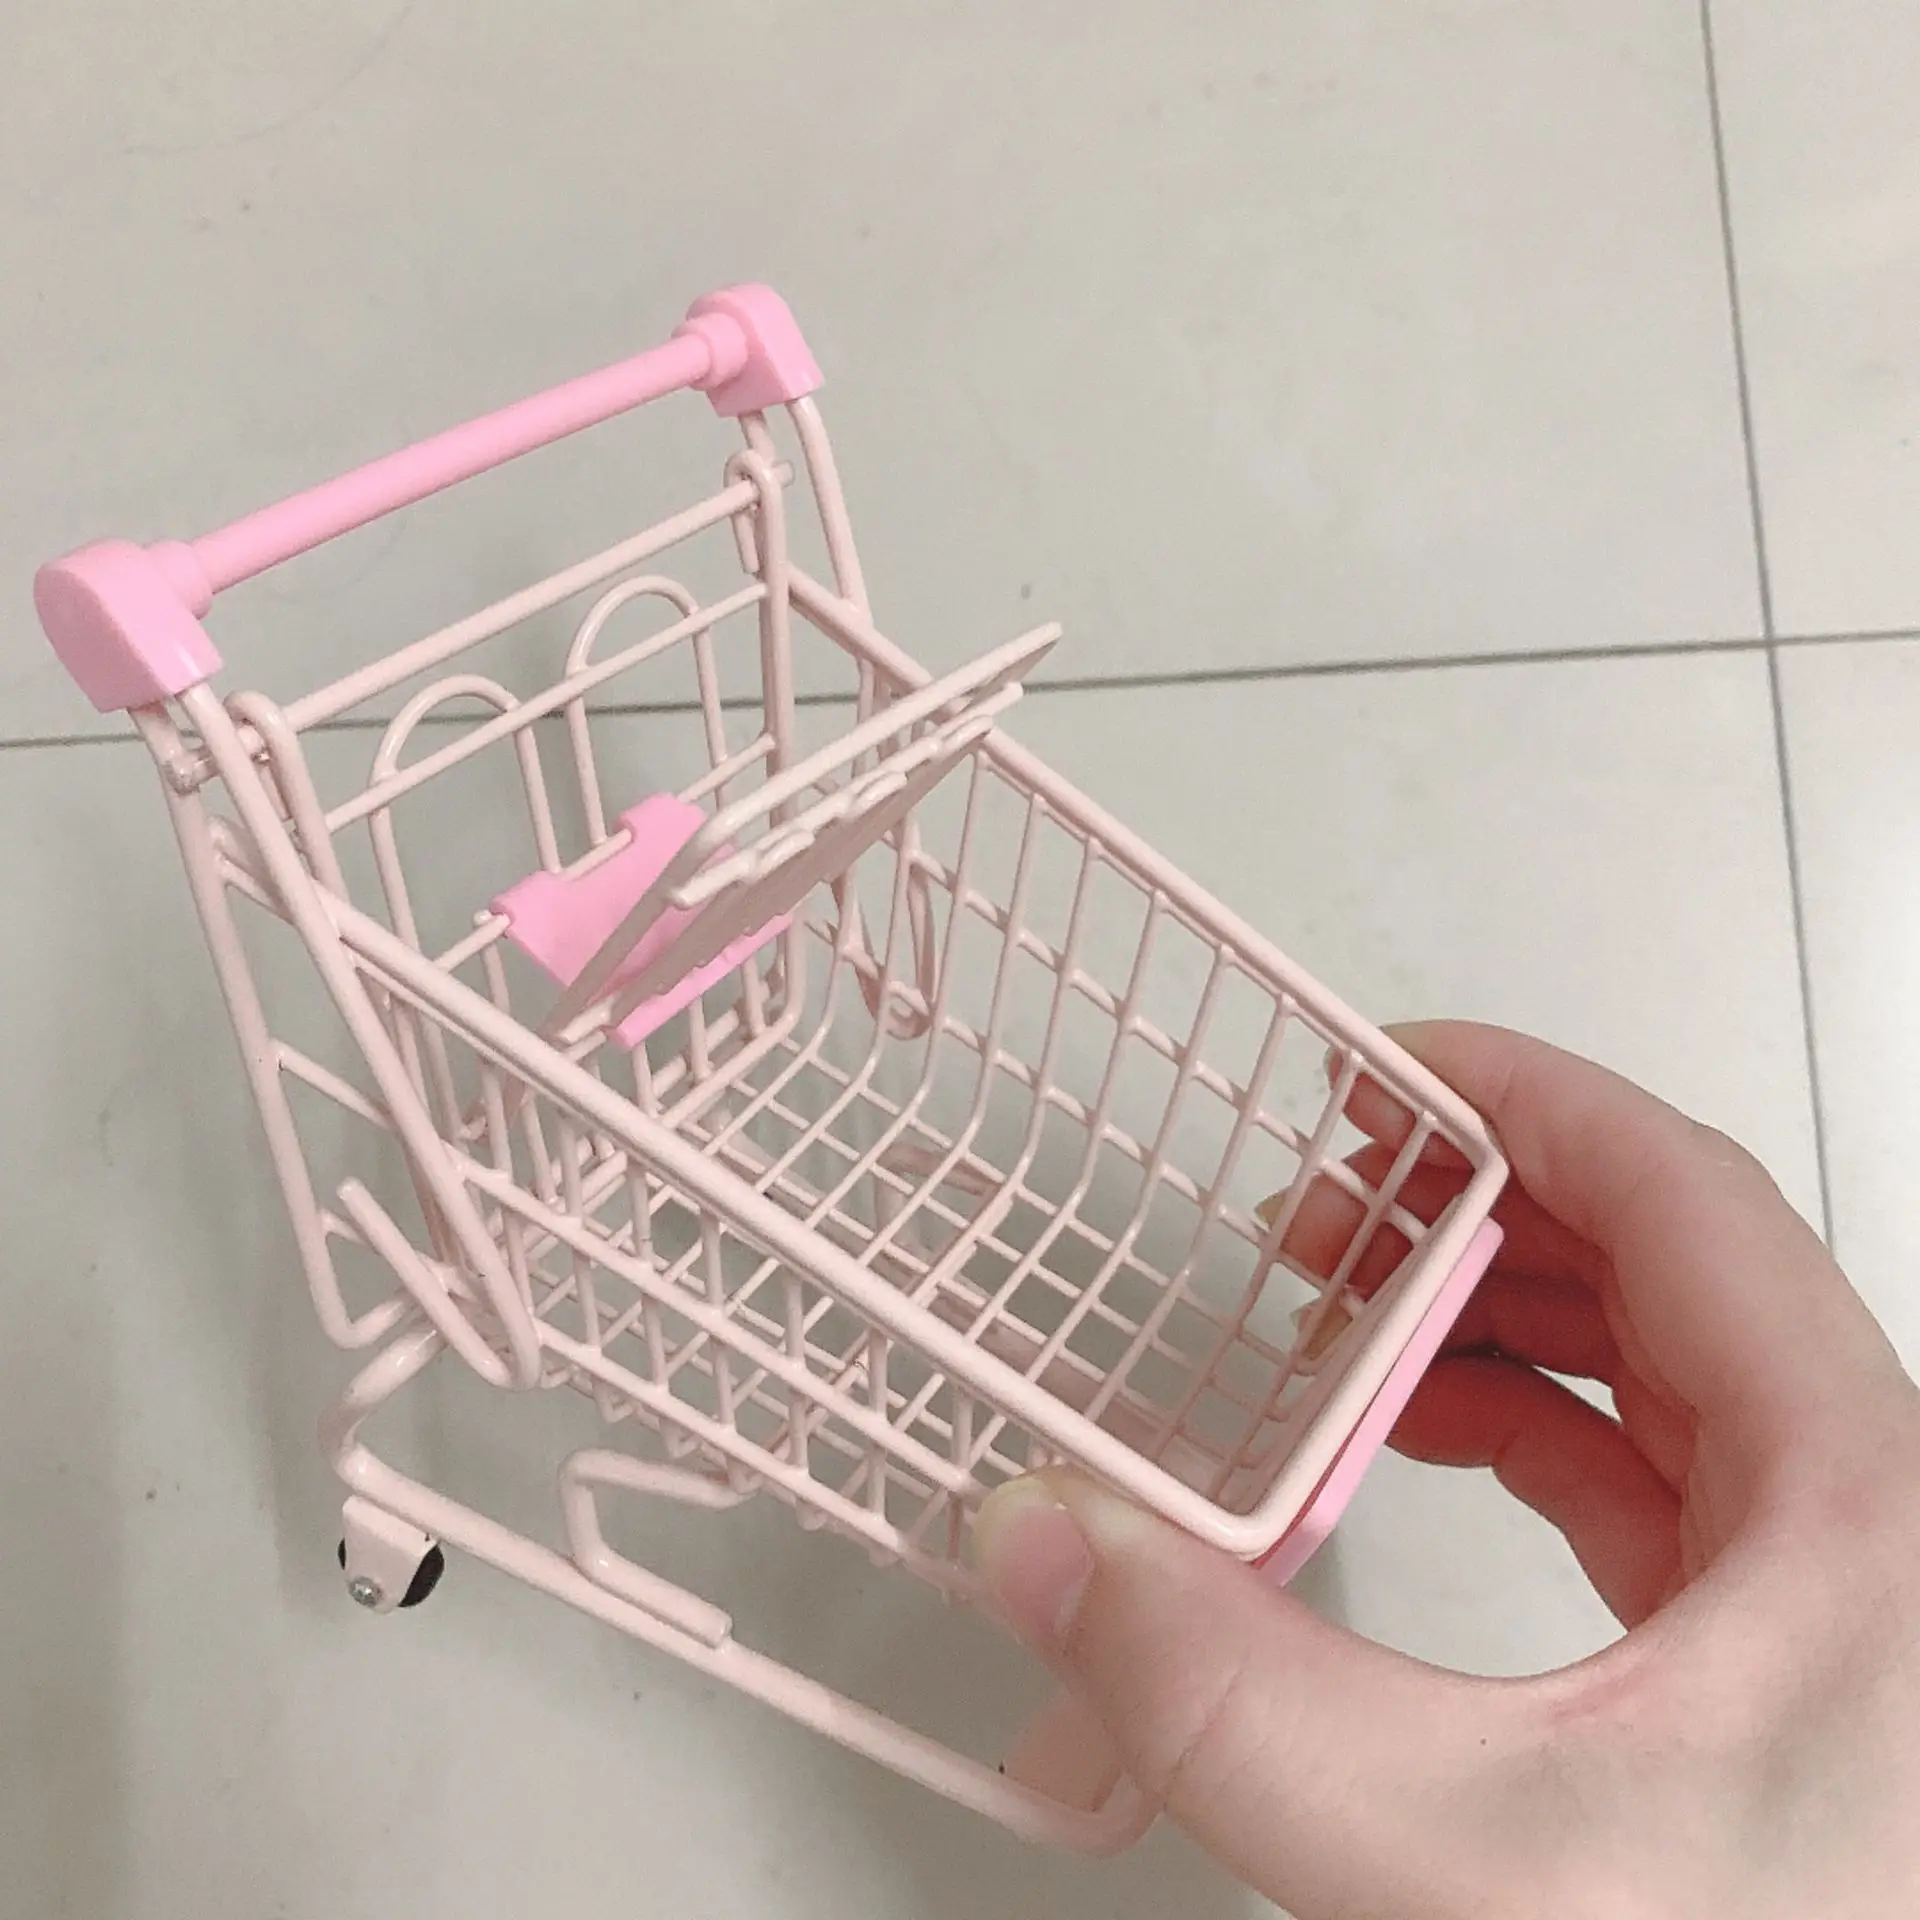 

Supermarket trolley mini iron shopping cart storage basket, Pink